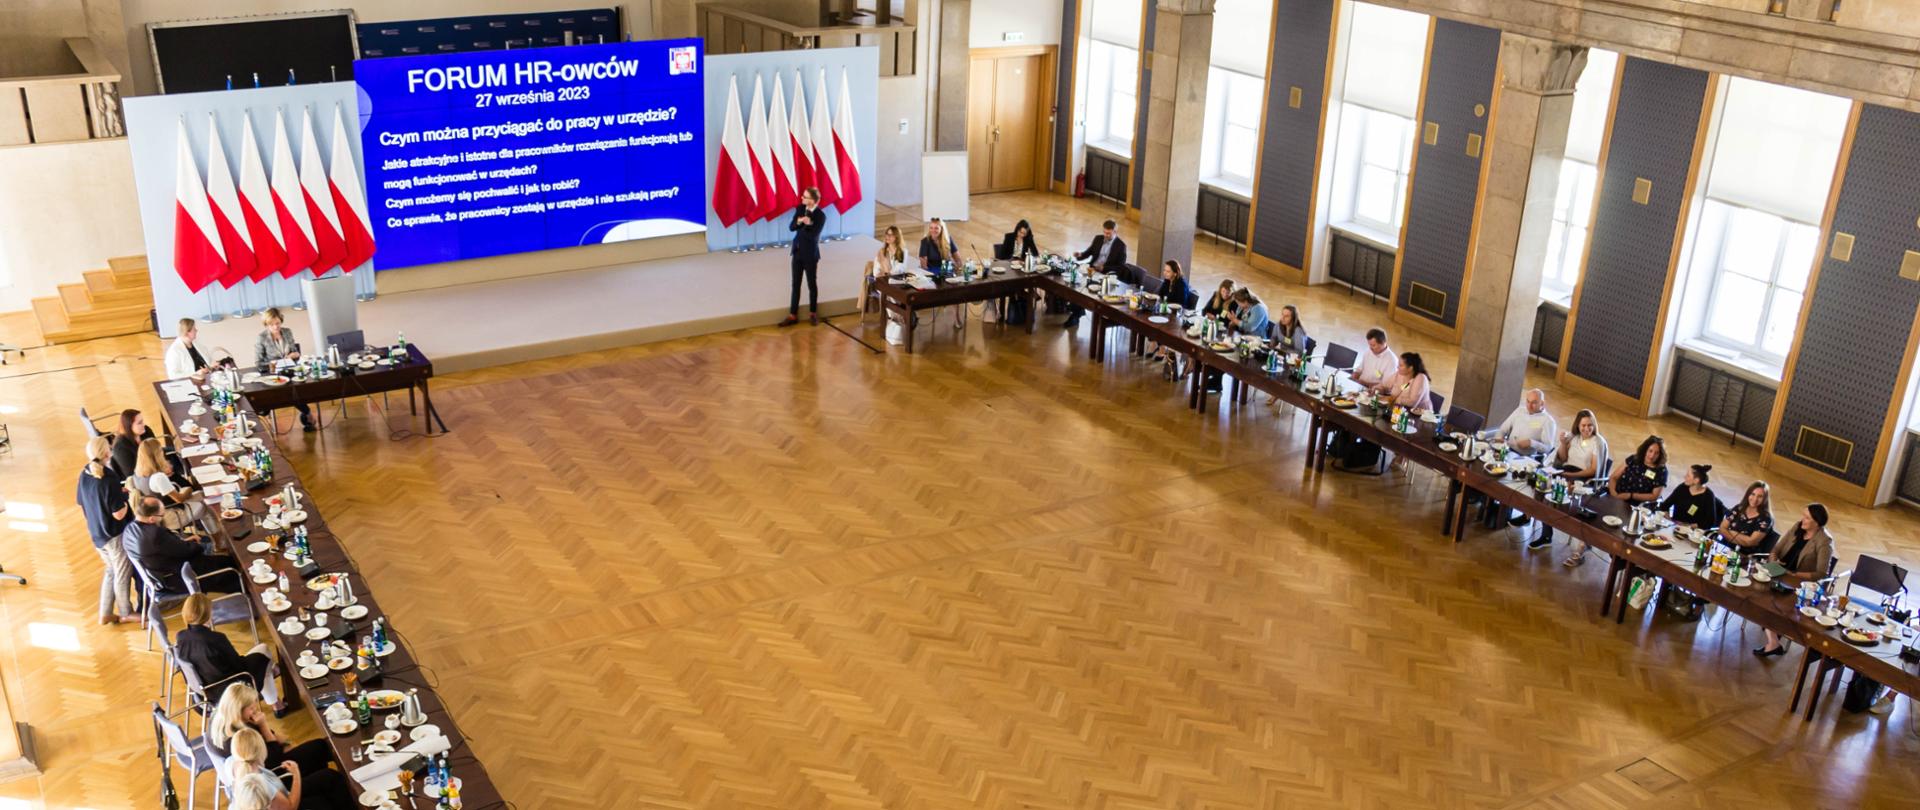 W dużej sali, przy dwóch długich stołach siedzi kilkadziesiąt osób. Na środku wyświetlana prezentacja, po dwóch stronach biało-czerwone flagi.